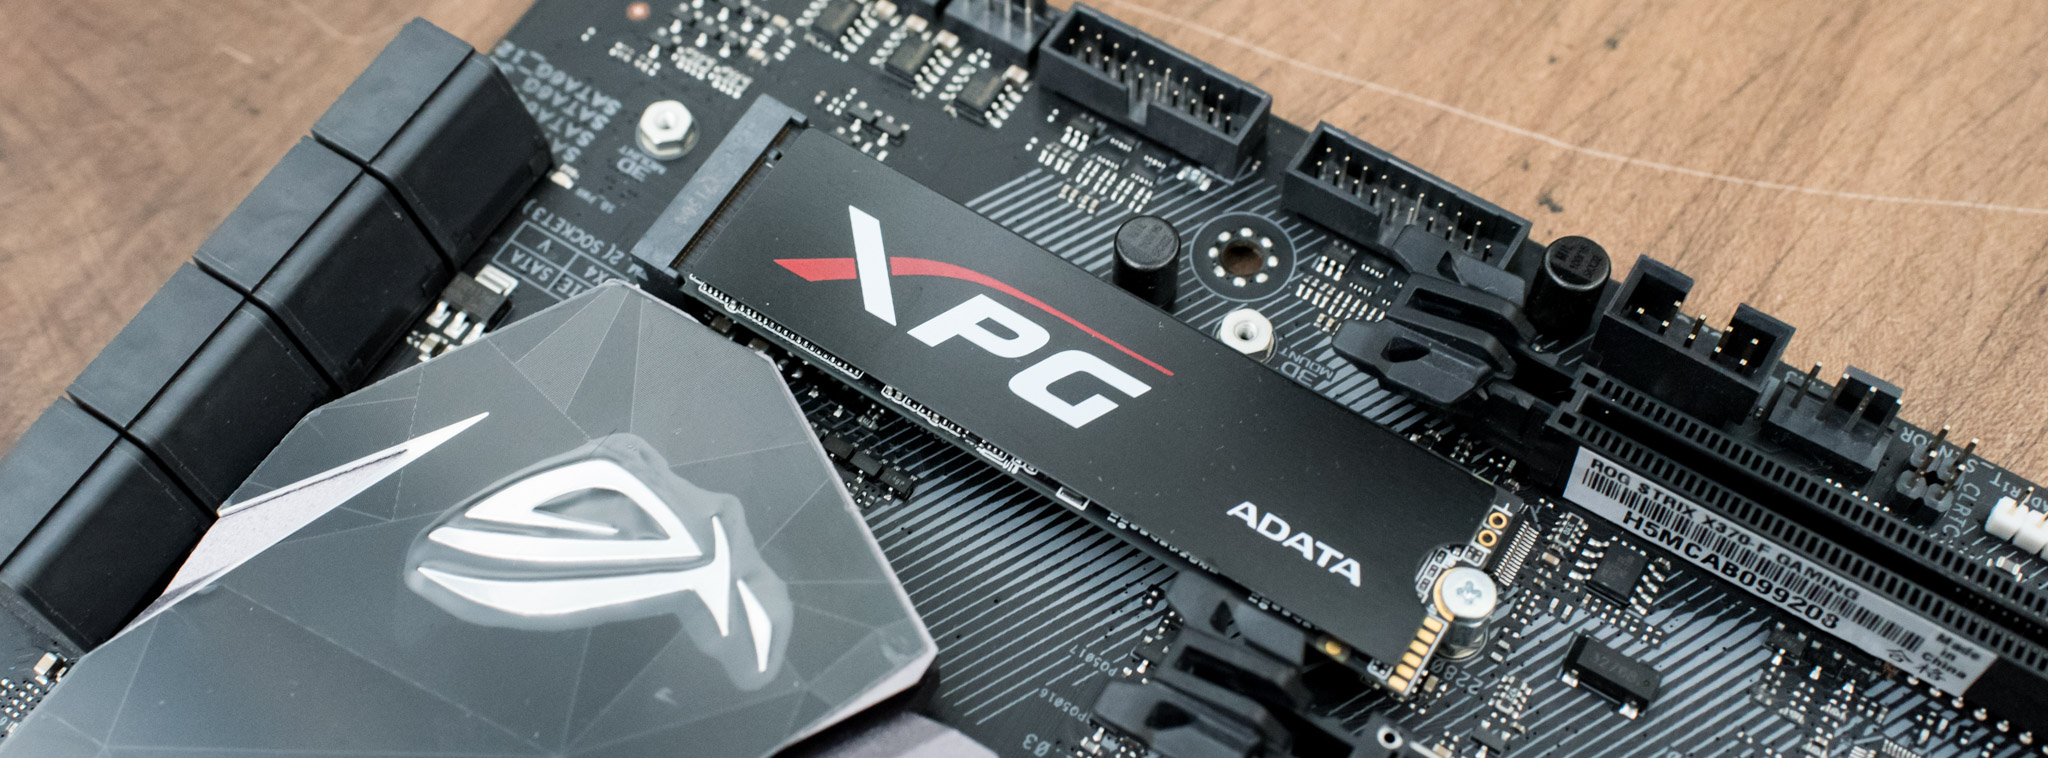 Đánh giá ổ ADATA XPG SX8000: hiệu năng tốt, có heatsink tản nhiệt, giá 3,3 triệu cho 256 GB